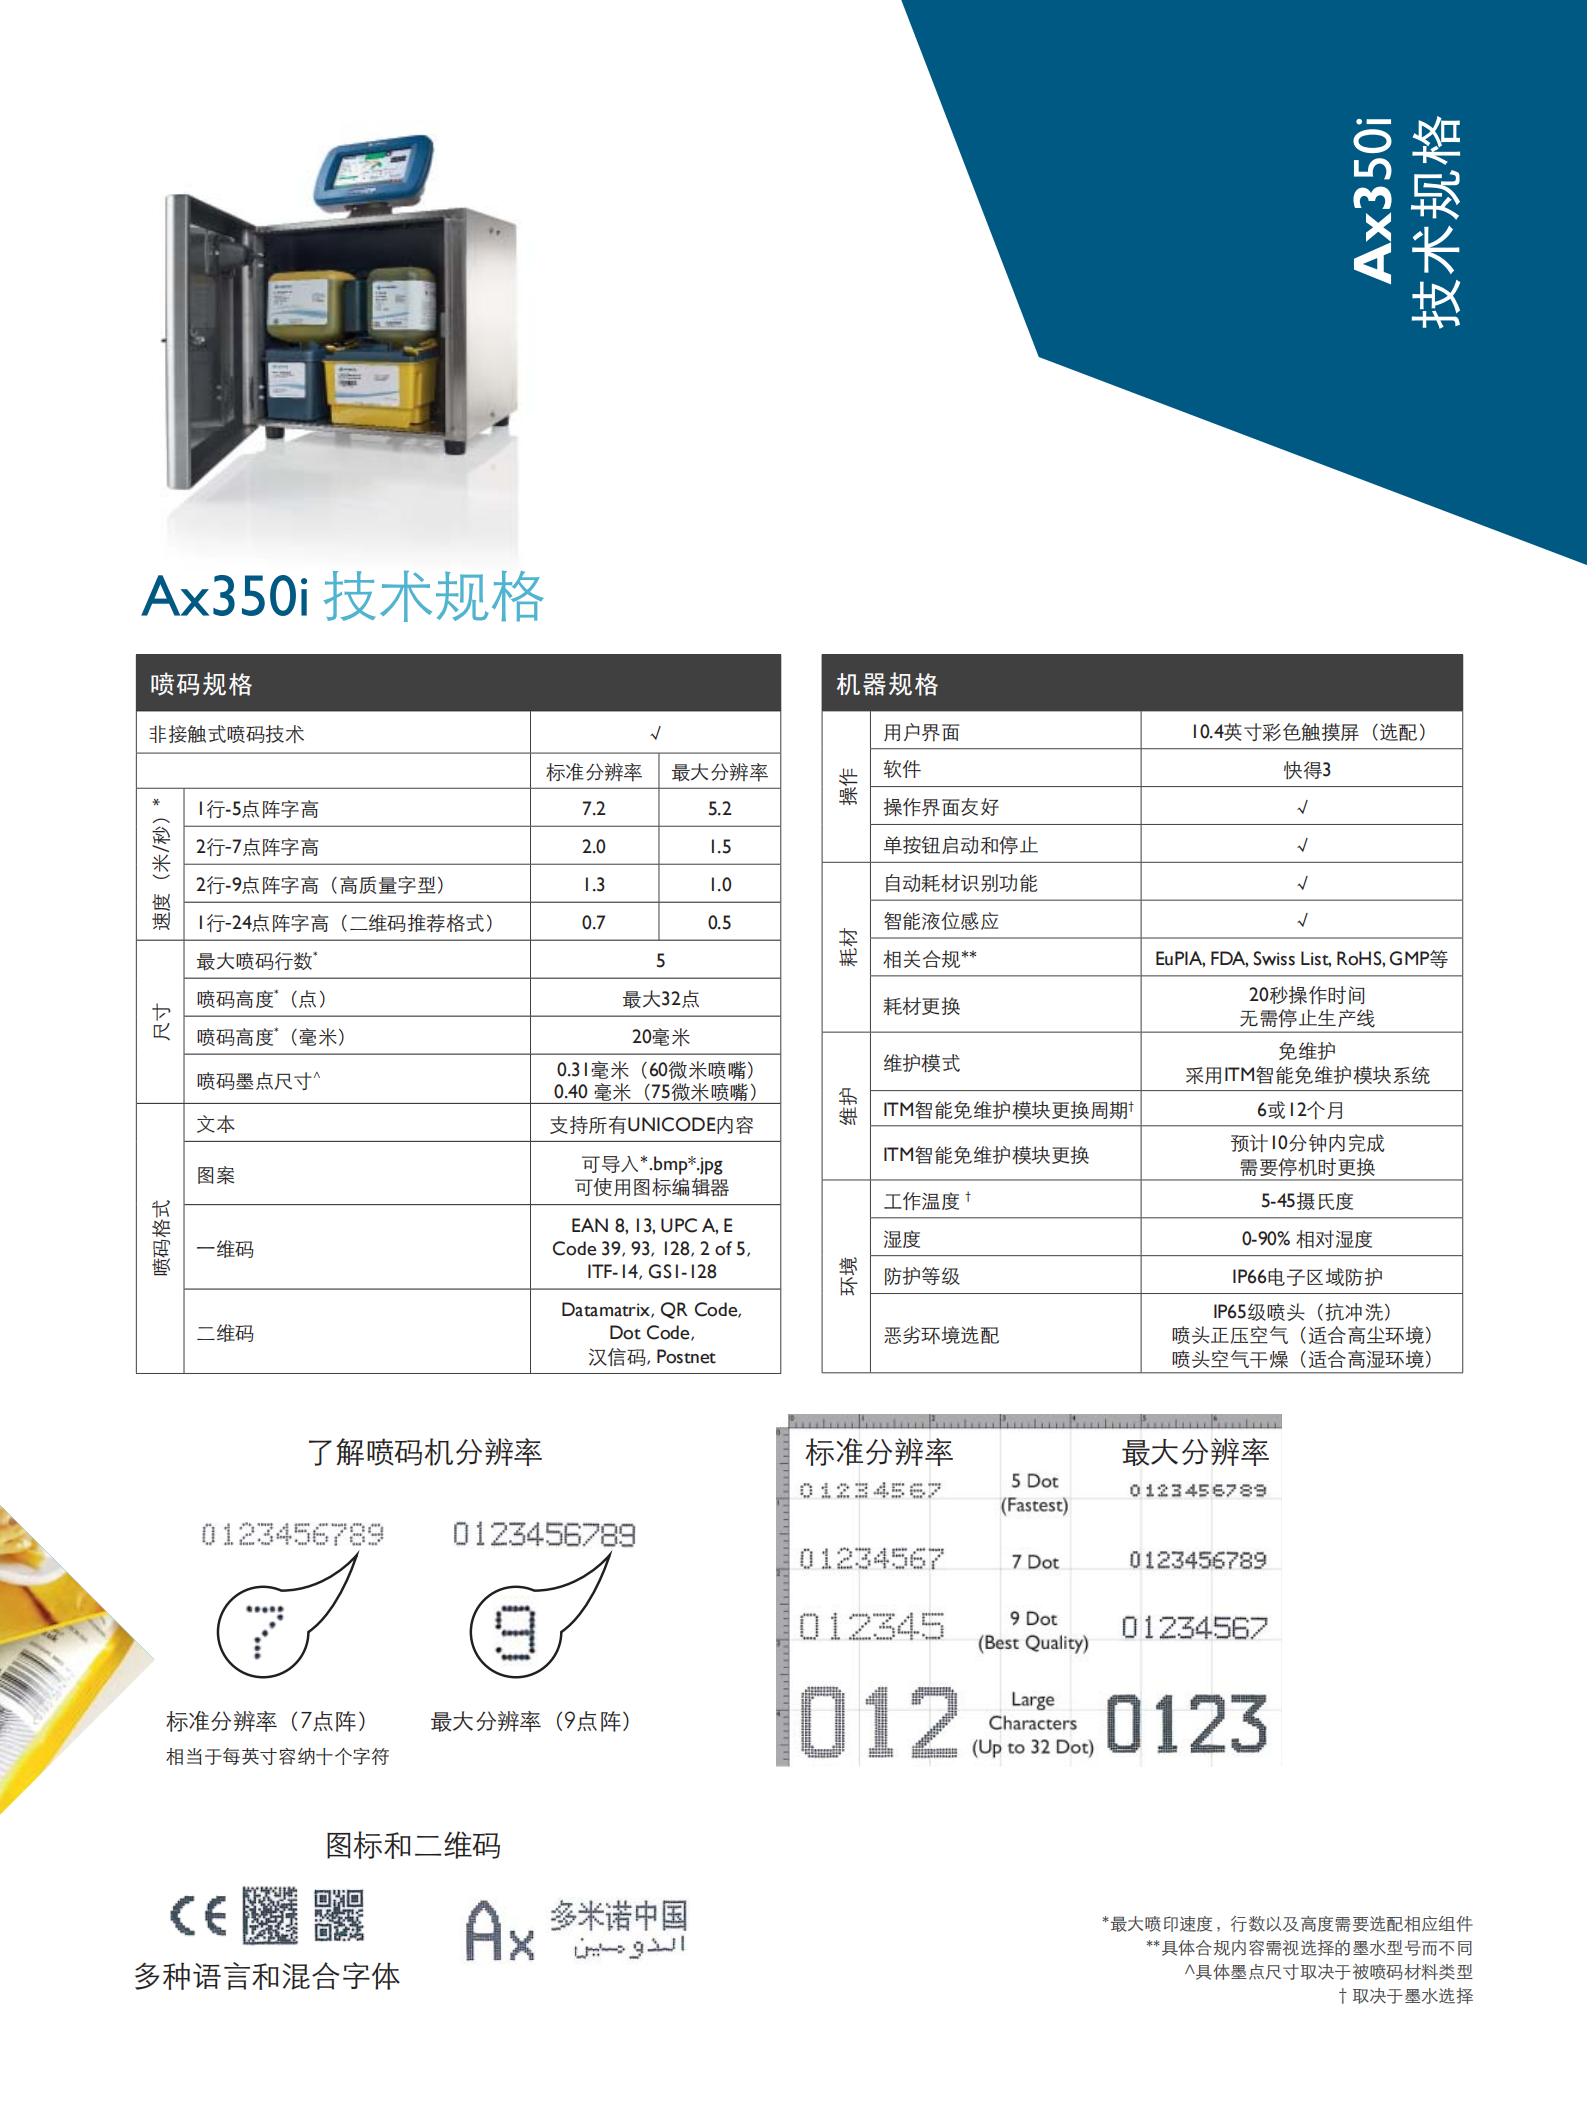 Brochure-CN-Ax350i_02.png